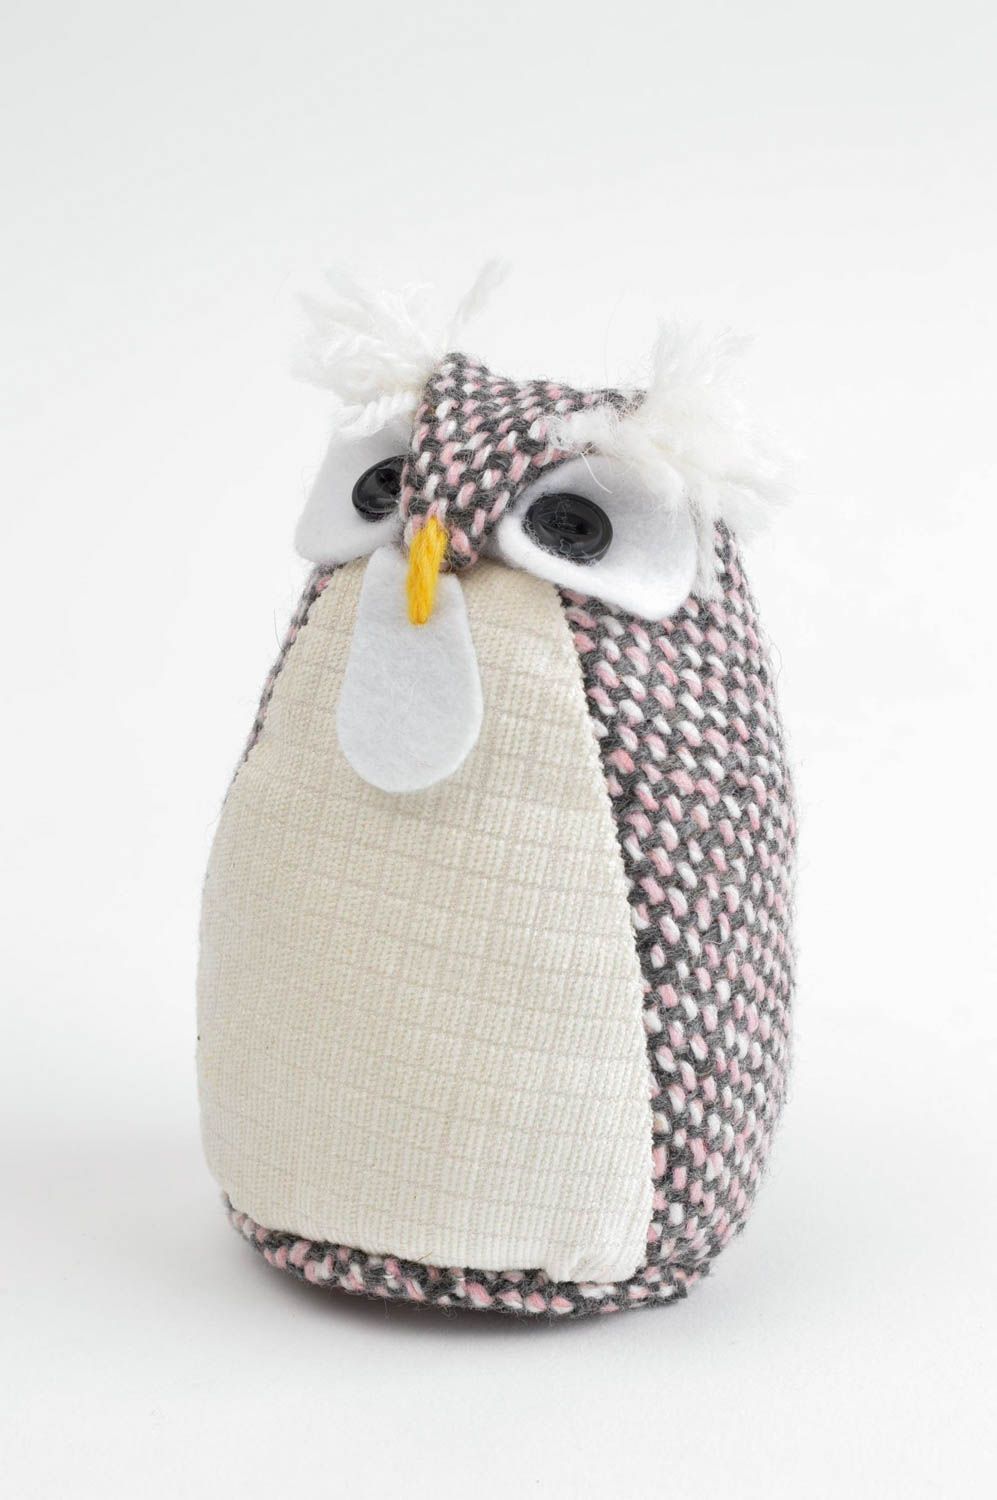 Handmade cute soft toy unusual designer owl toy stylish nursery decor ideas photo 2